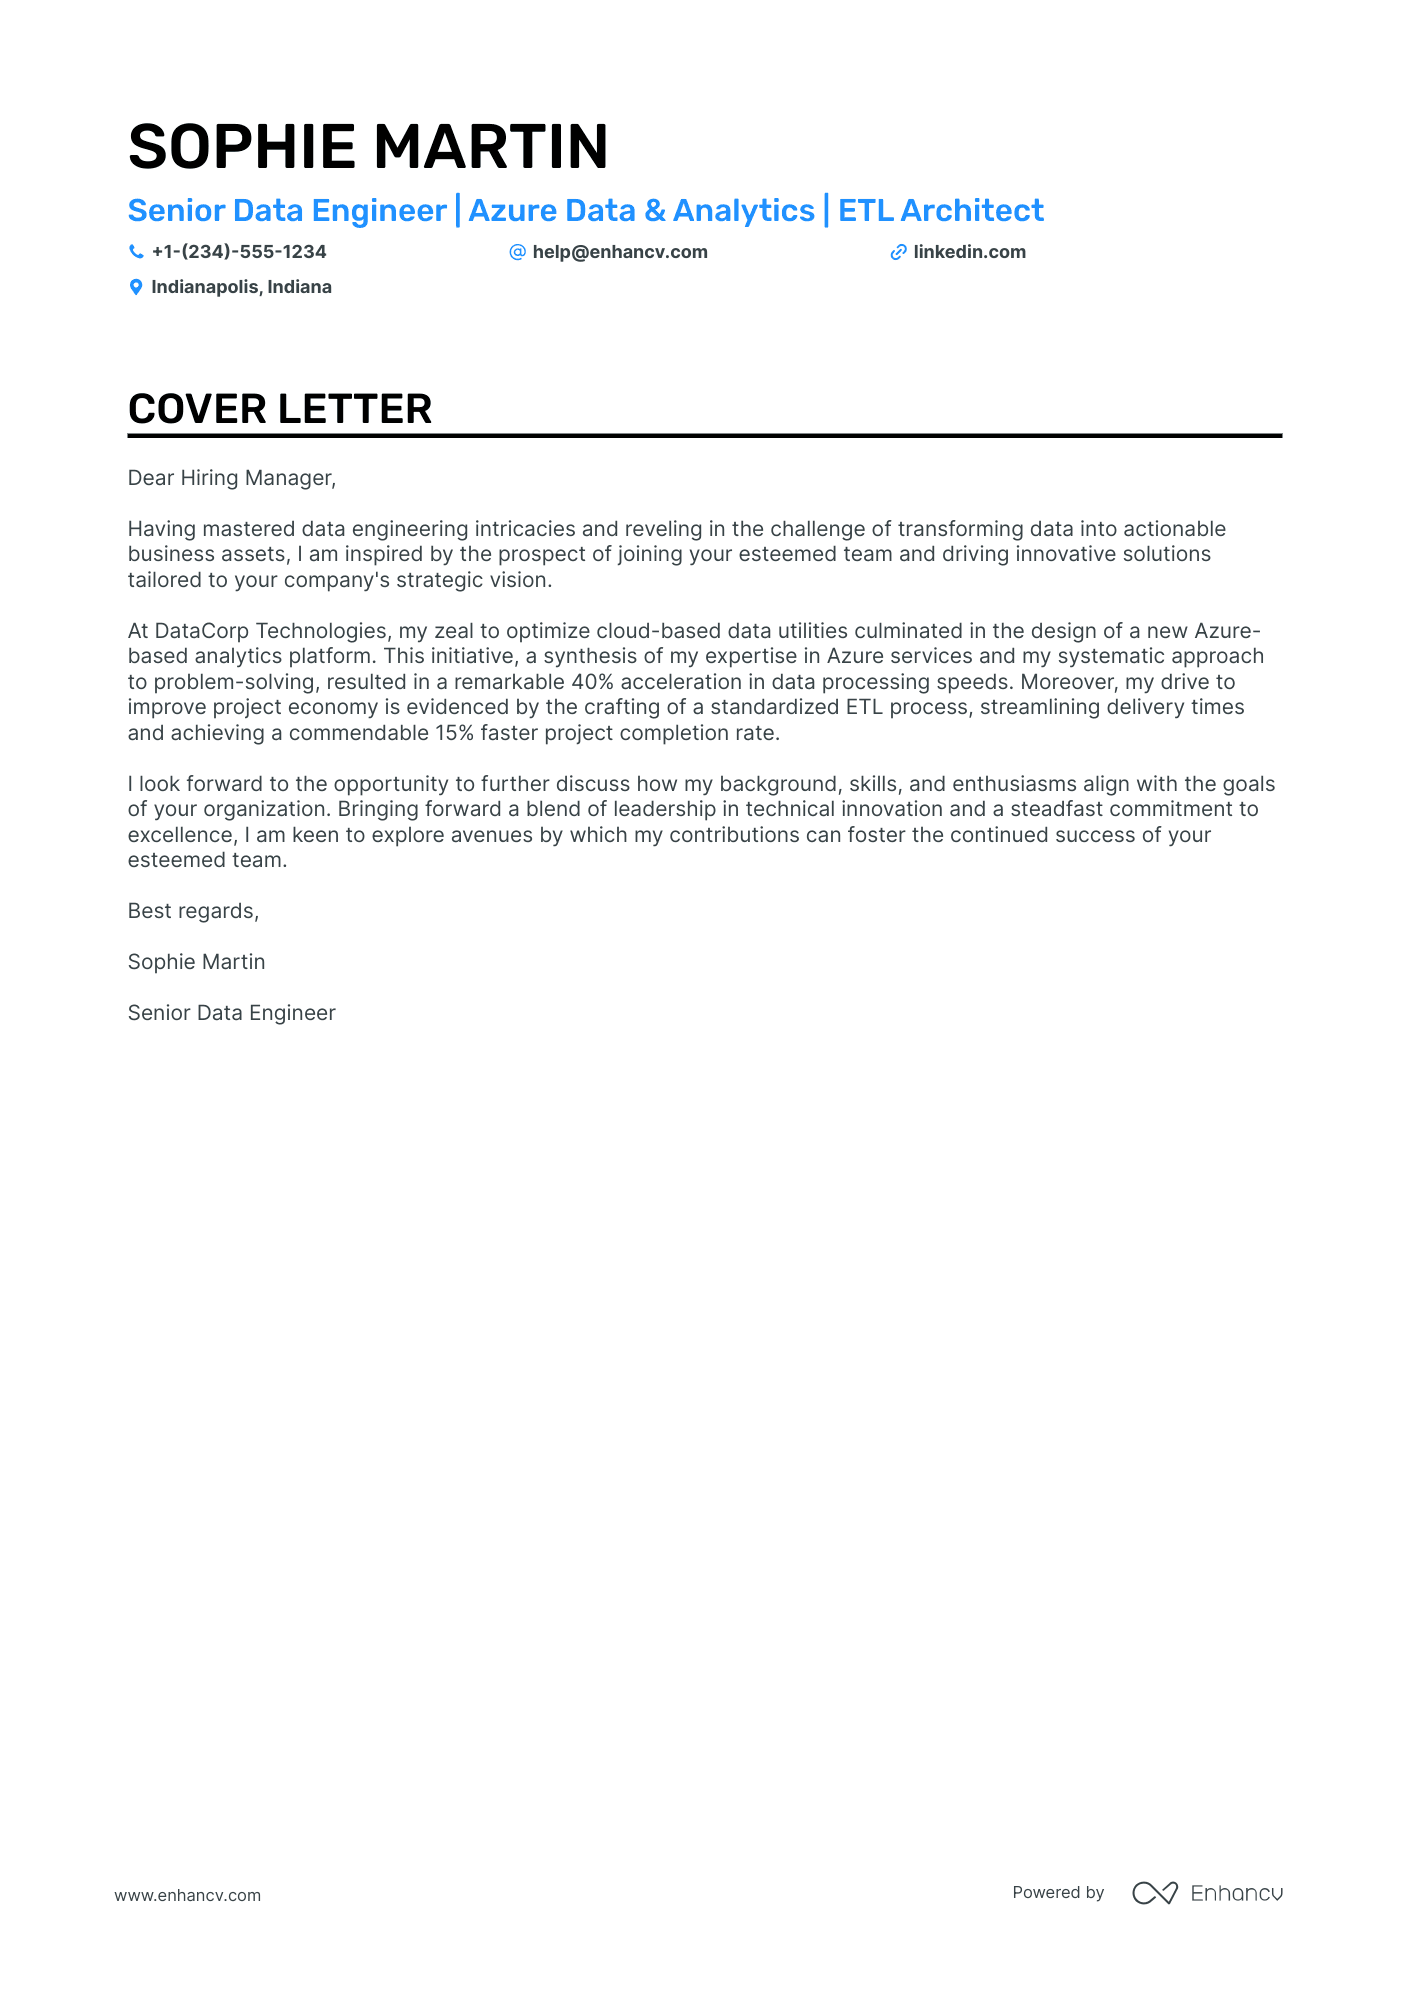 Azure Data Engineer cover letter